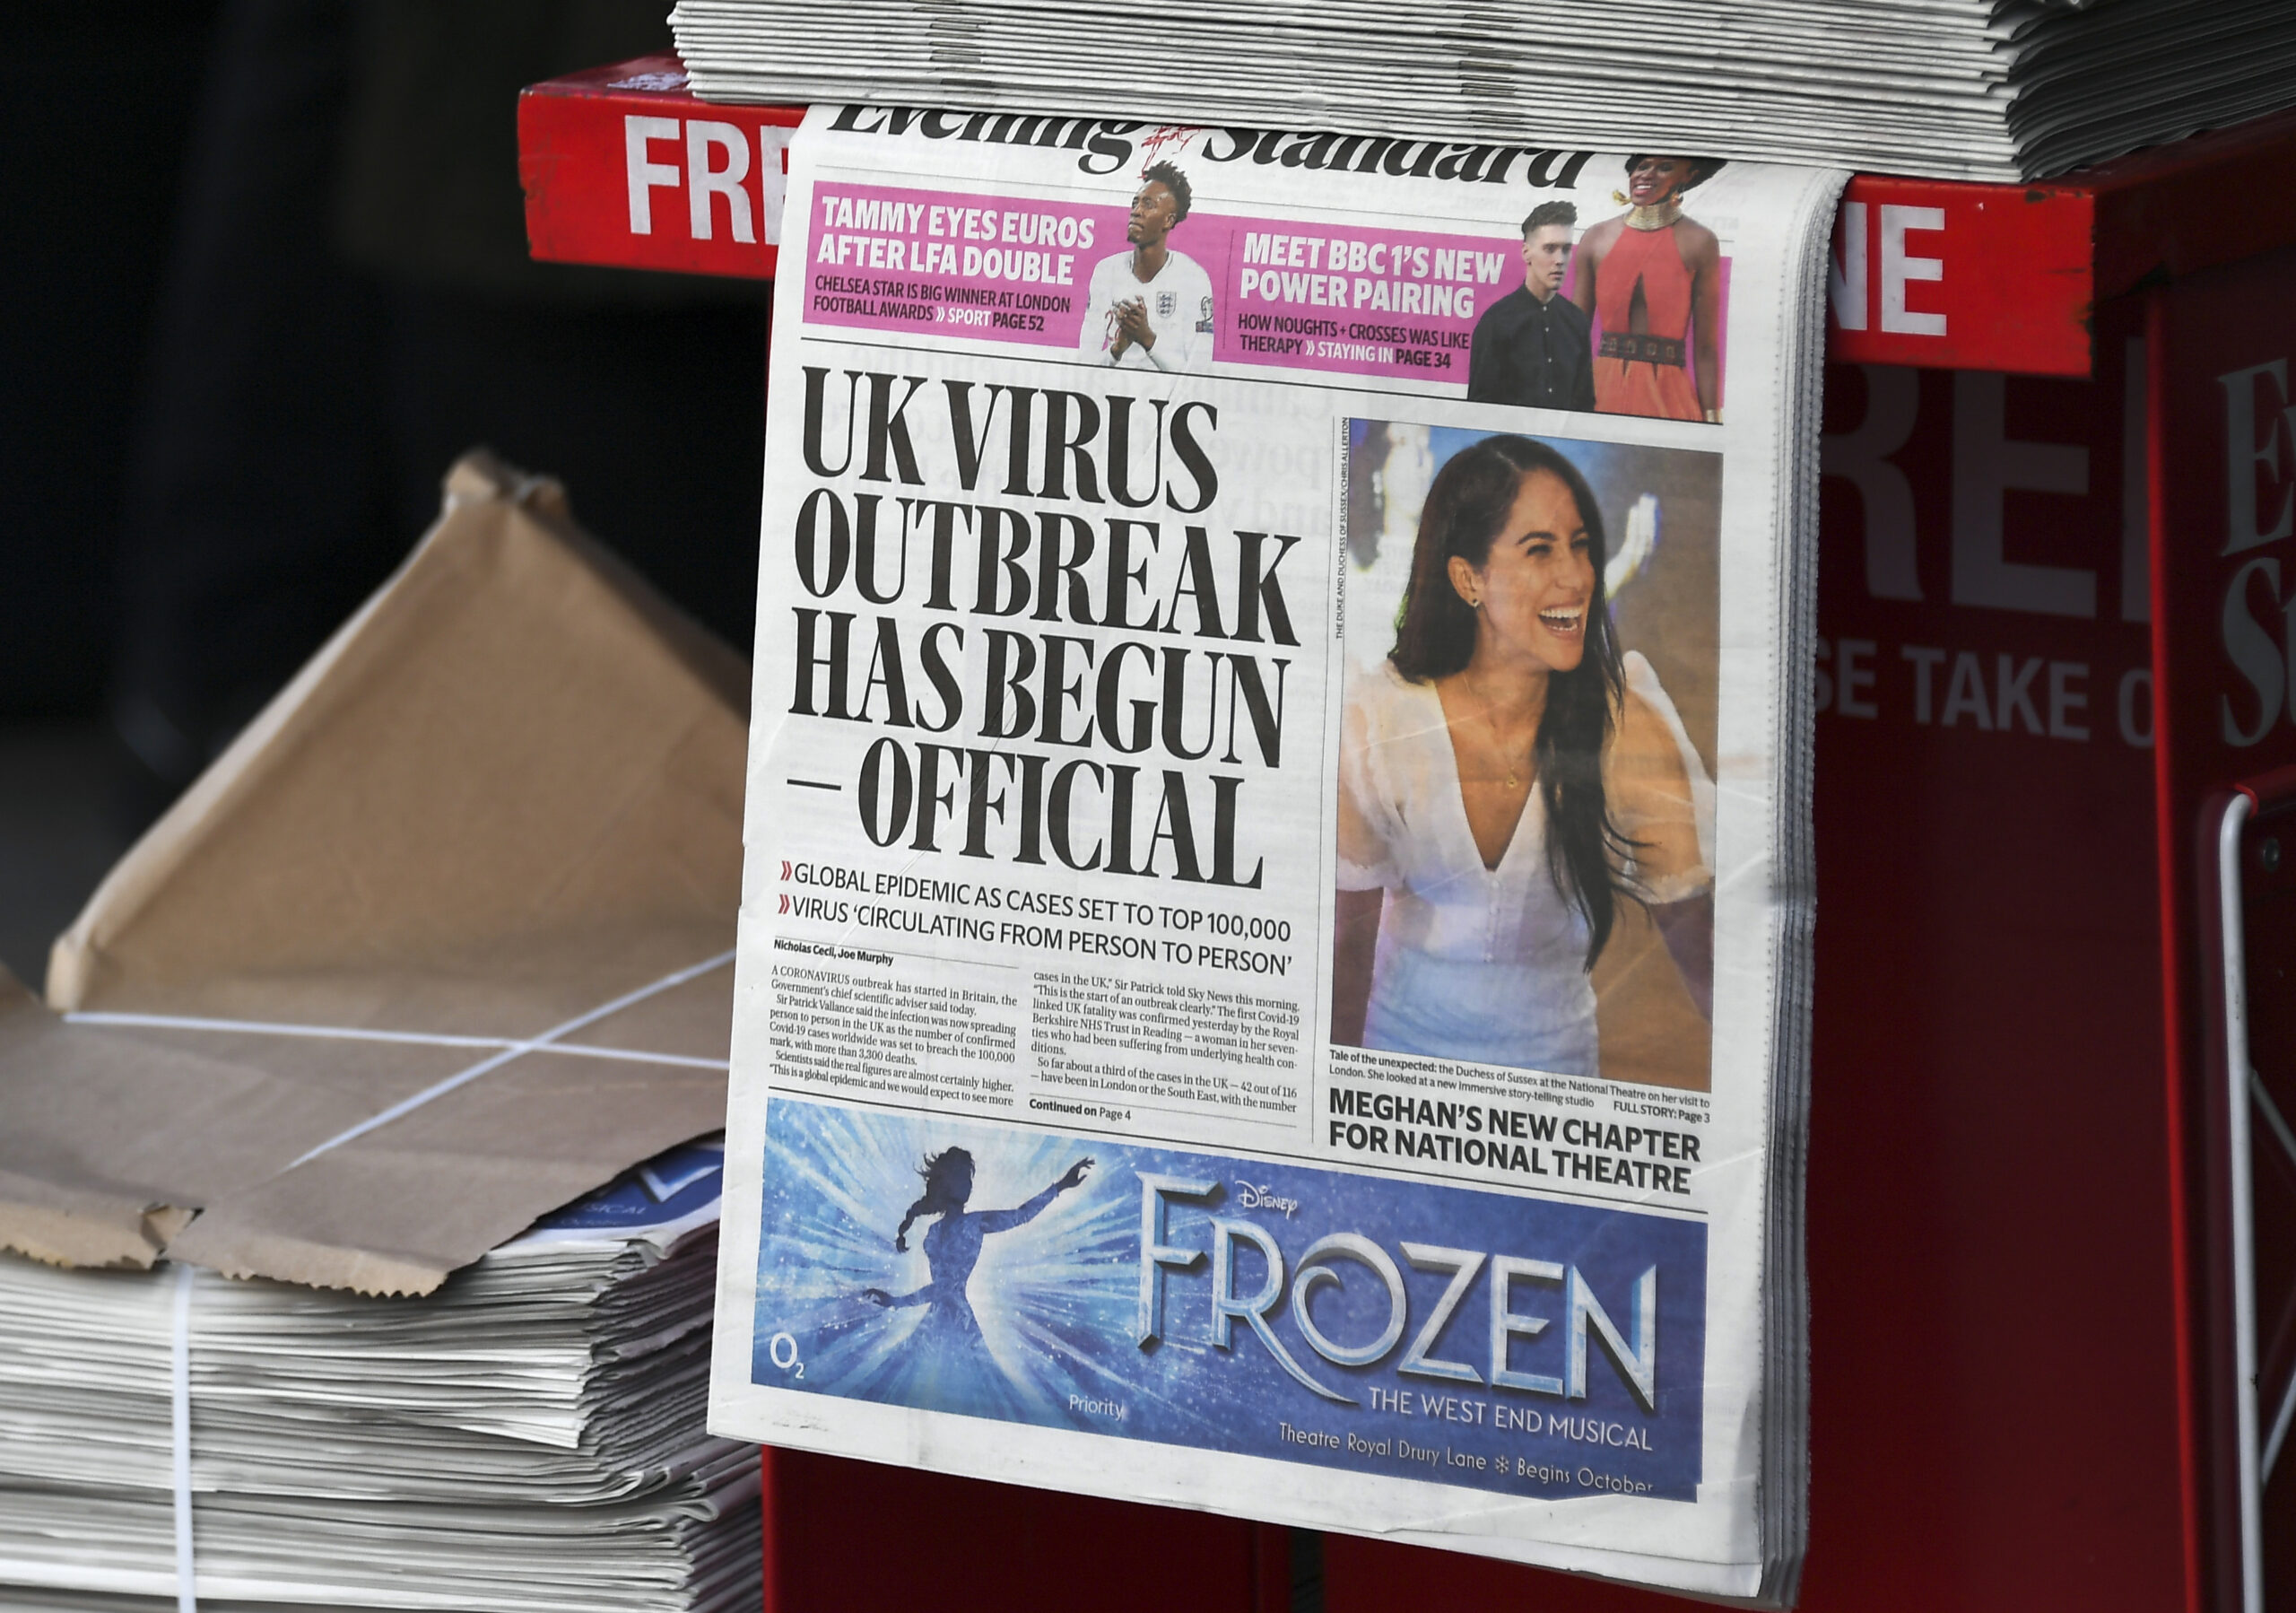 Βρετανία: Η λονδρέζικη καθημερινή εφημερίδα Evening Standard ανακοινώνει ότι θα γίνει εβδομαδιαία